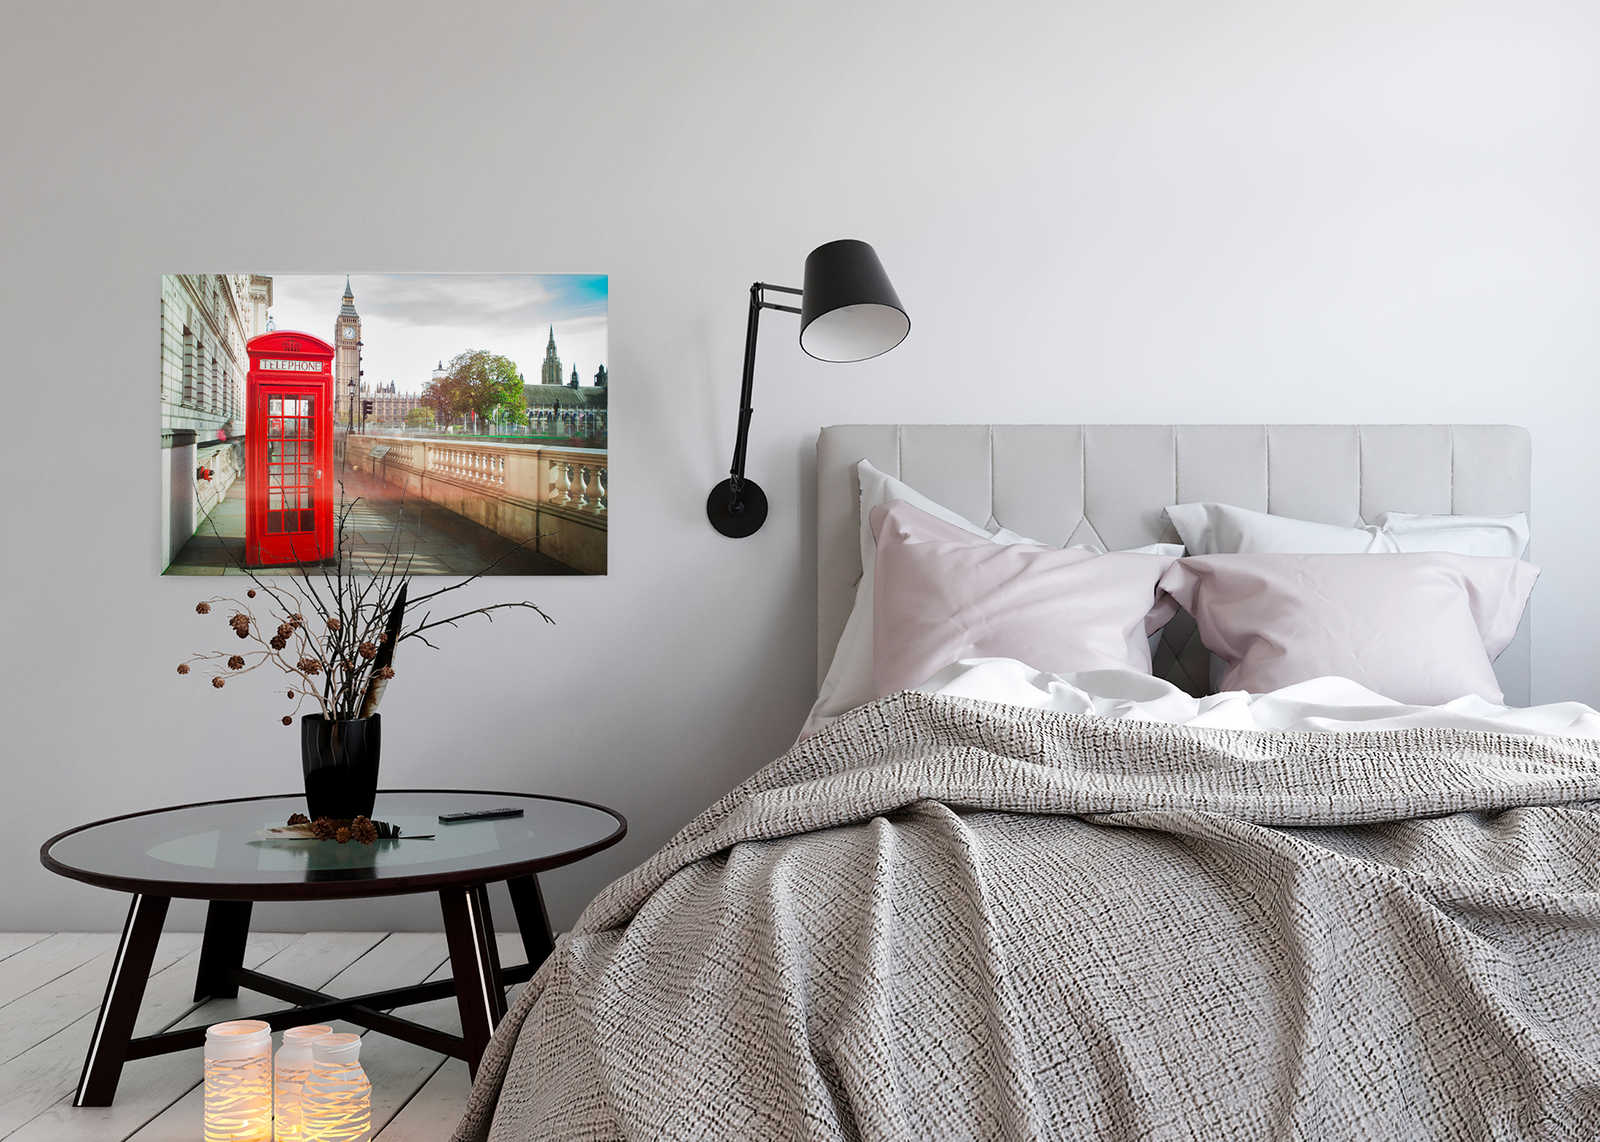             Canvas met rode telefooncel in Londen - 0.90 m x 0.60 m
        